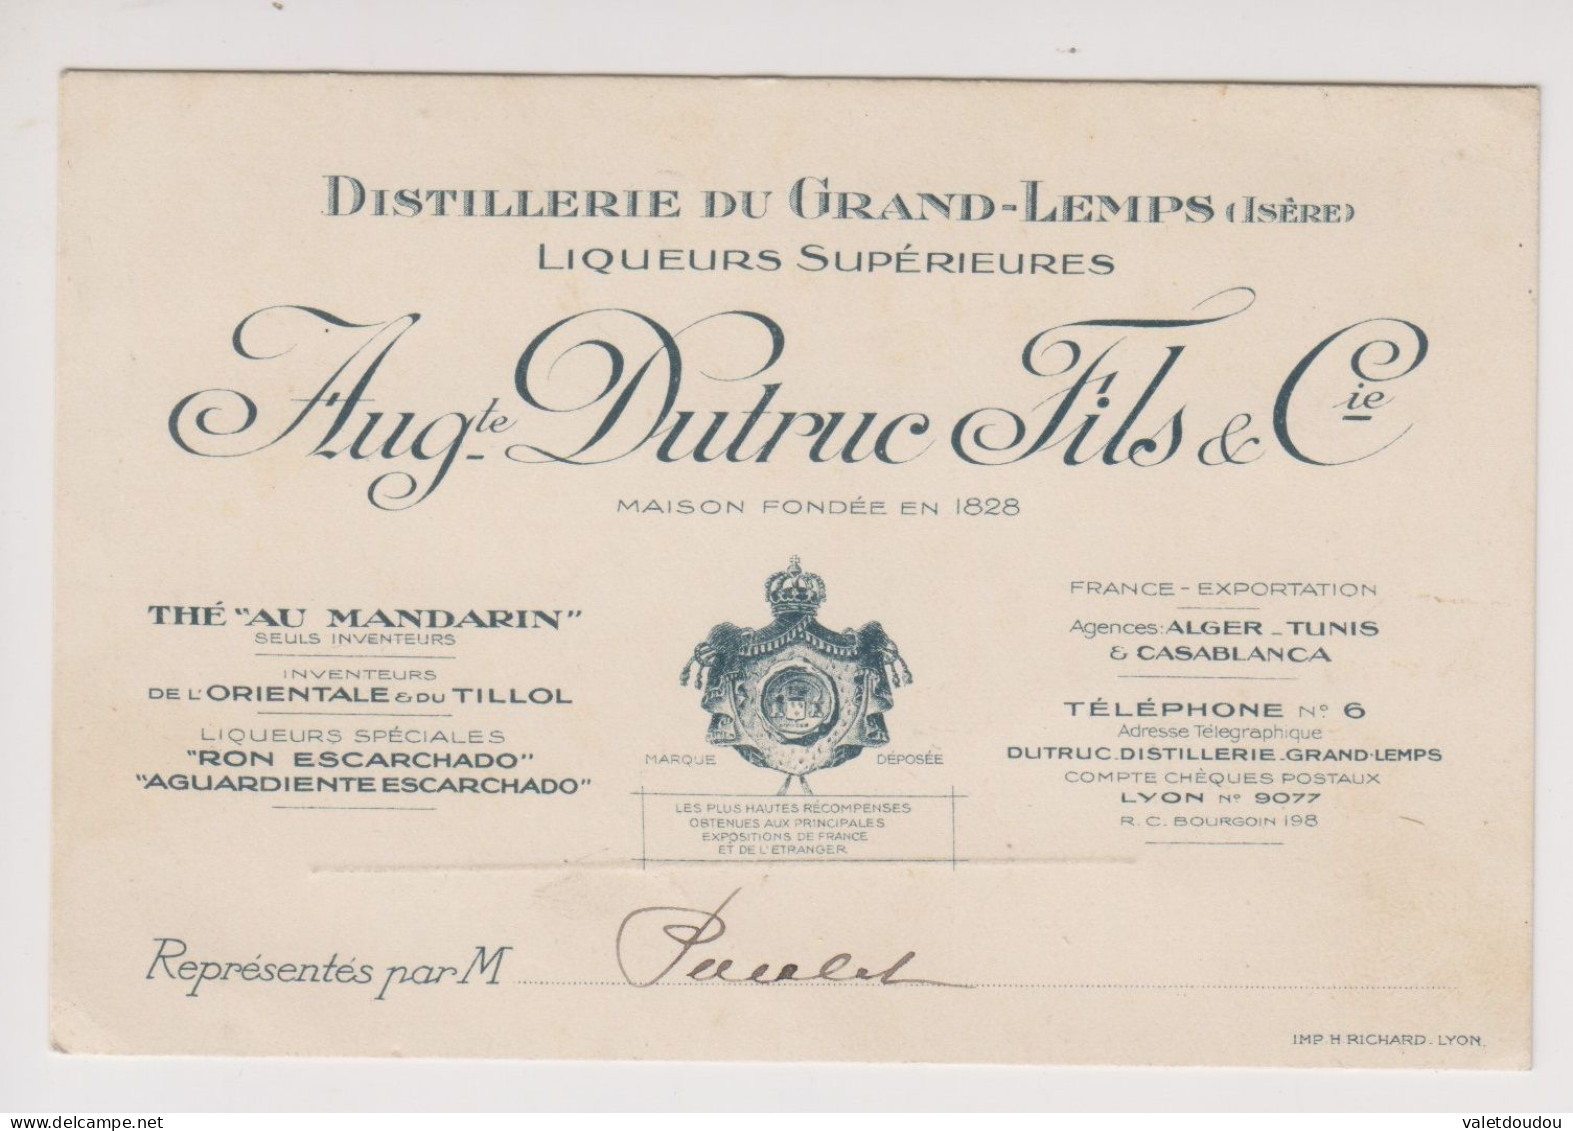 Carte De Visite Auguste Dutruc Fils & Cie .Distillerie Du Grand-Lemps. - Visitekaartjes